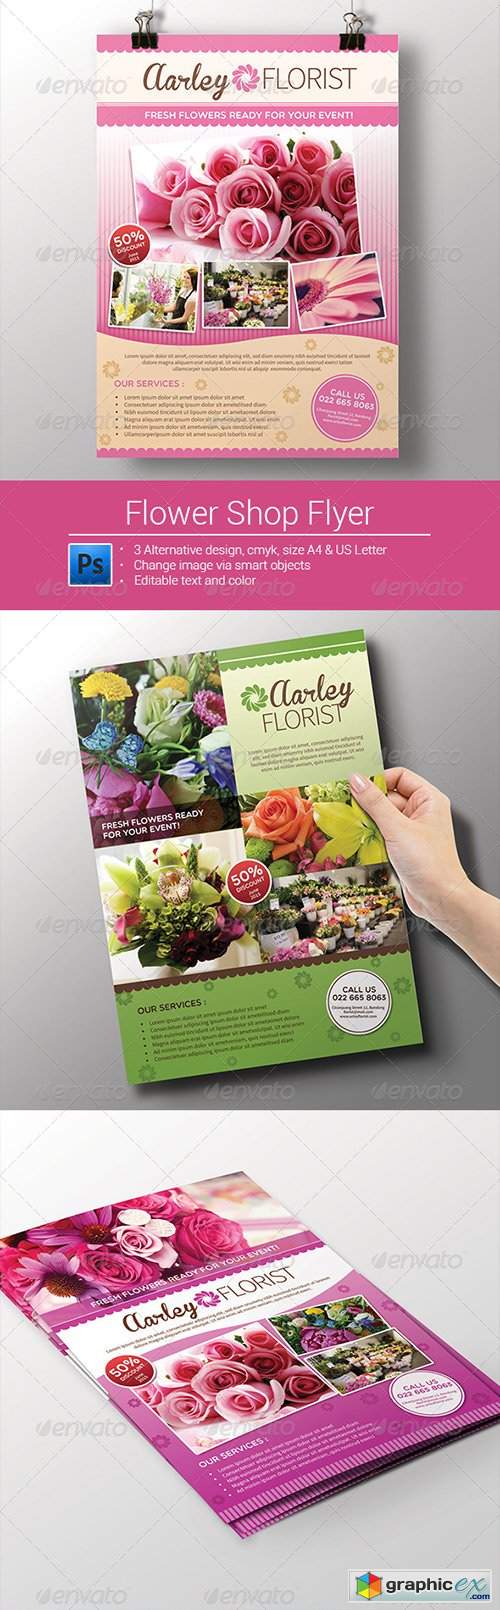 Flower Shop Flyer / Magazine Ad